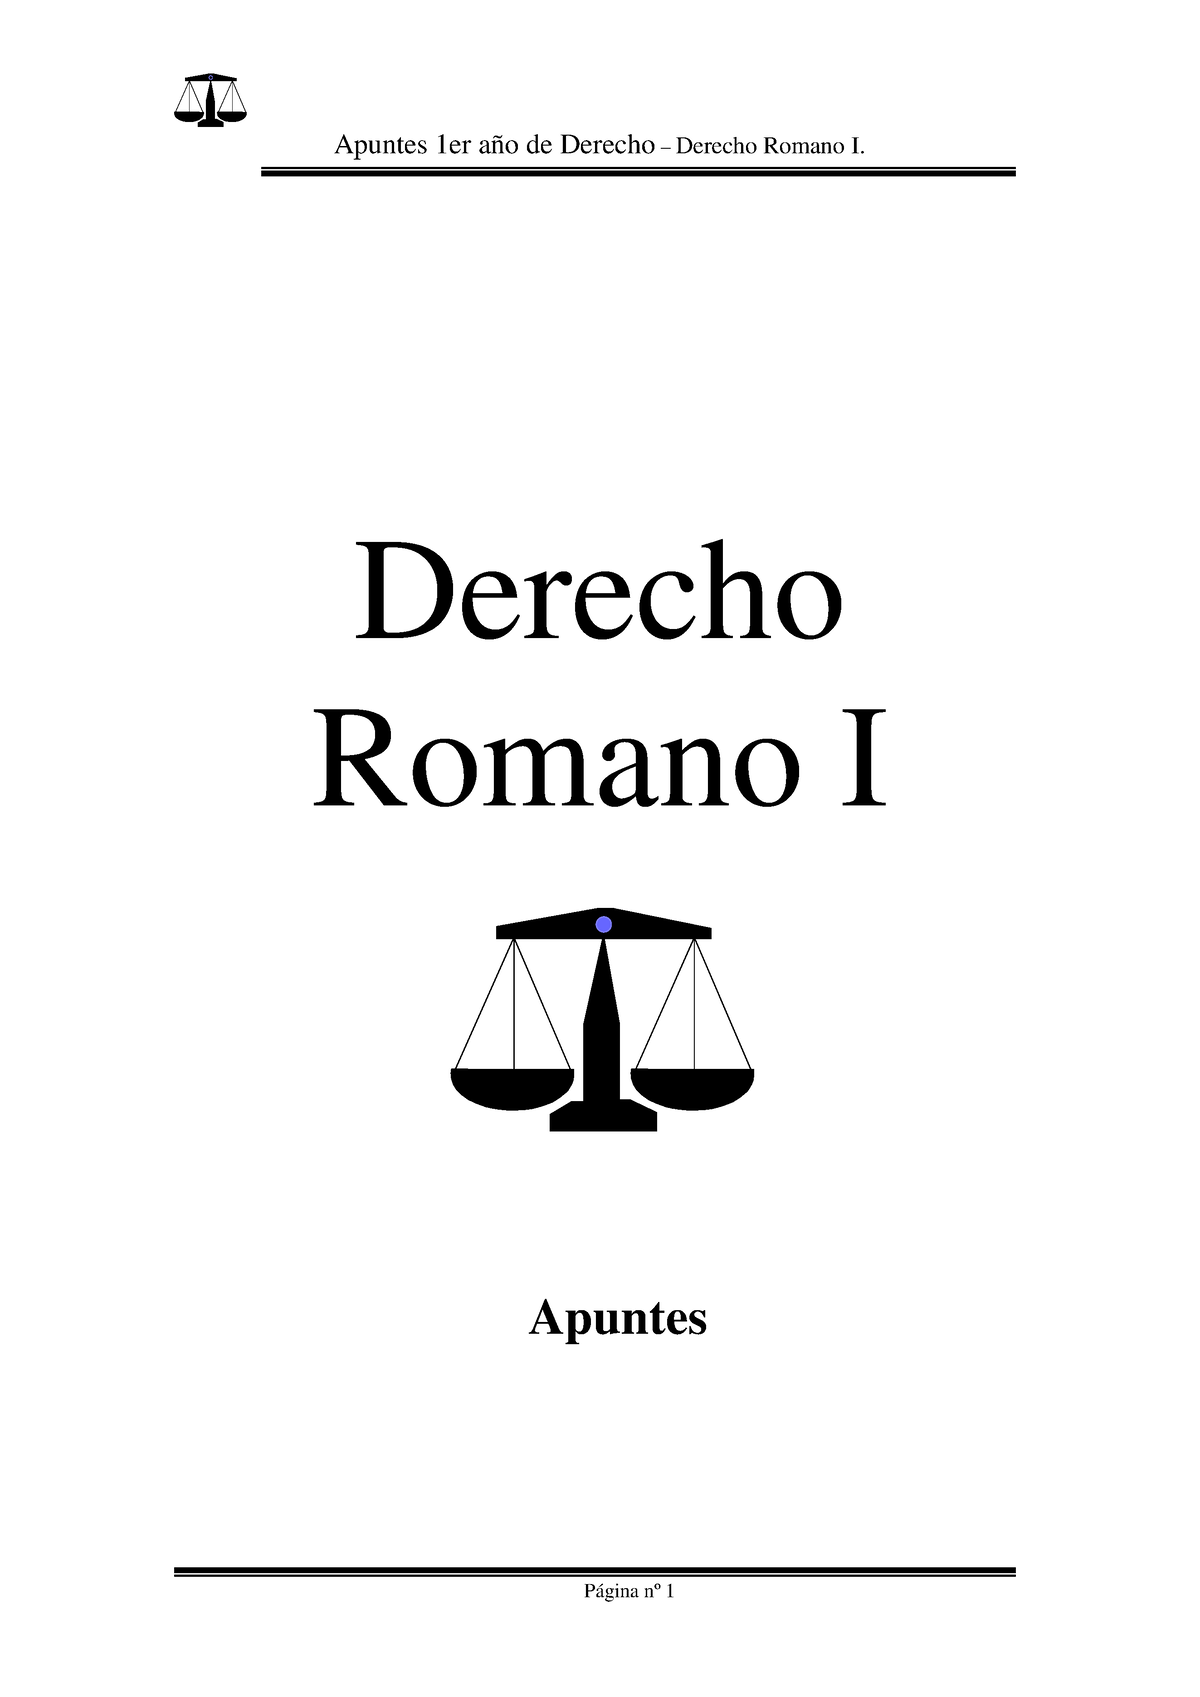 Apunteyfinalde Derecho Romano I Derecho Romano I Apuntes Lección 1 Derecho Romano La 8327